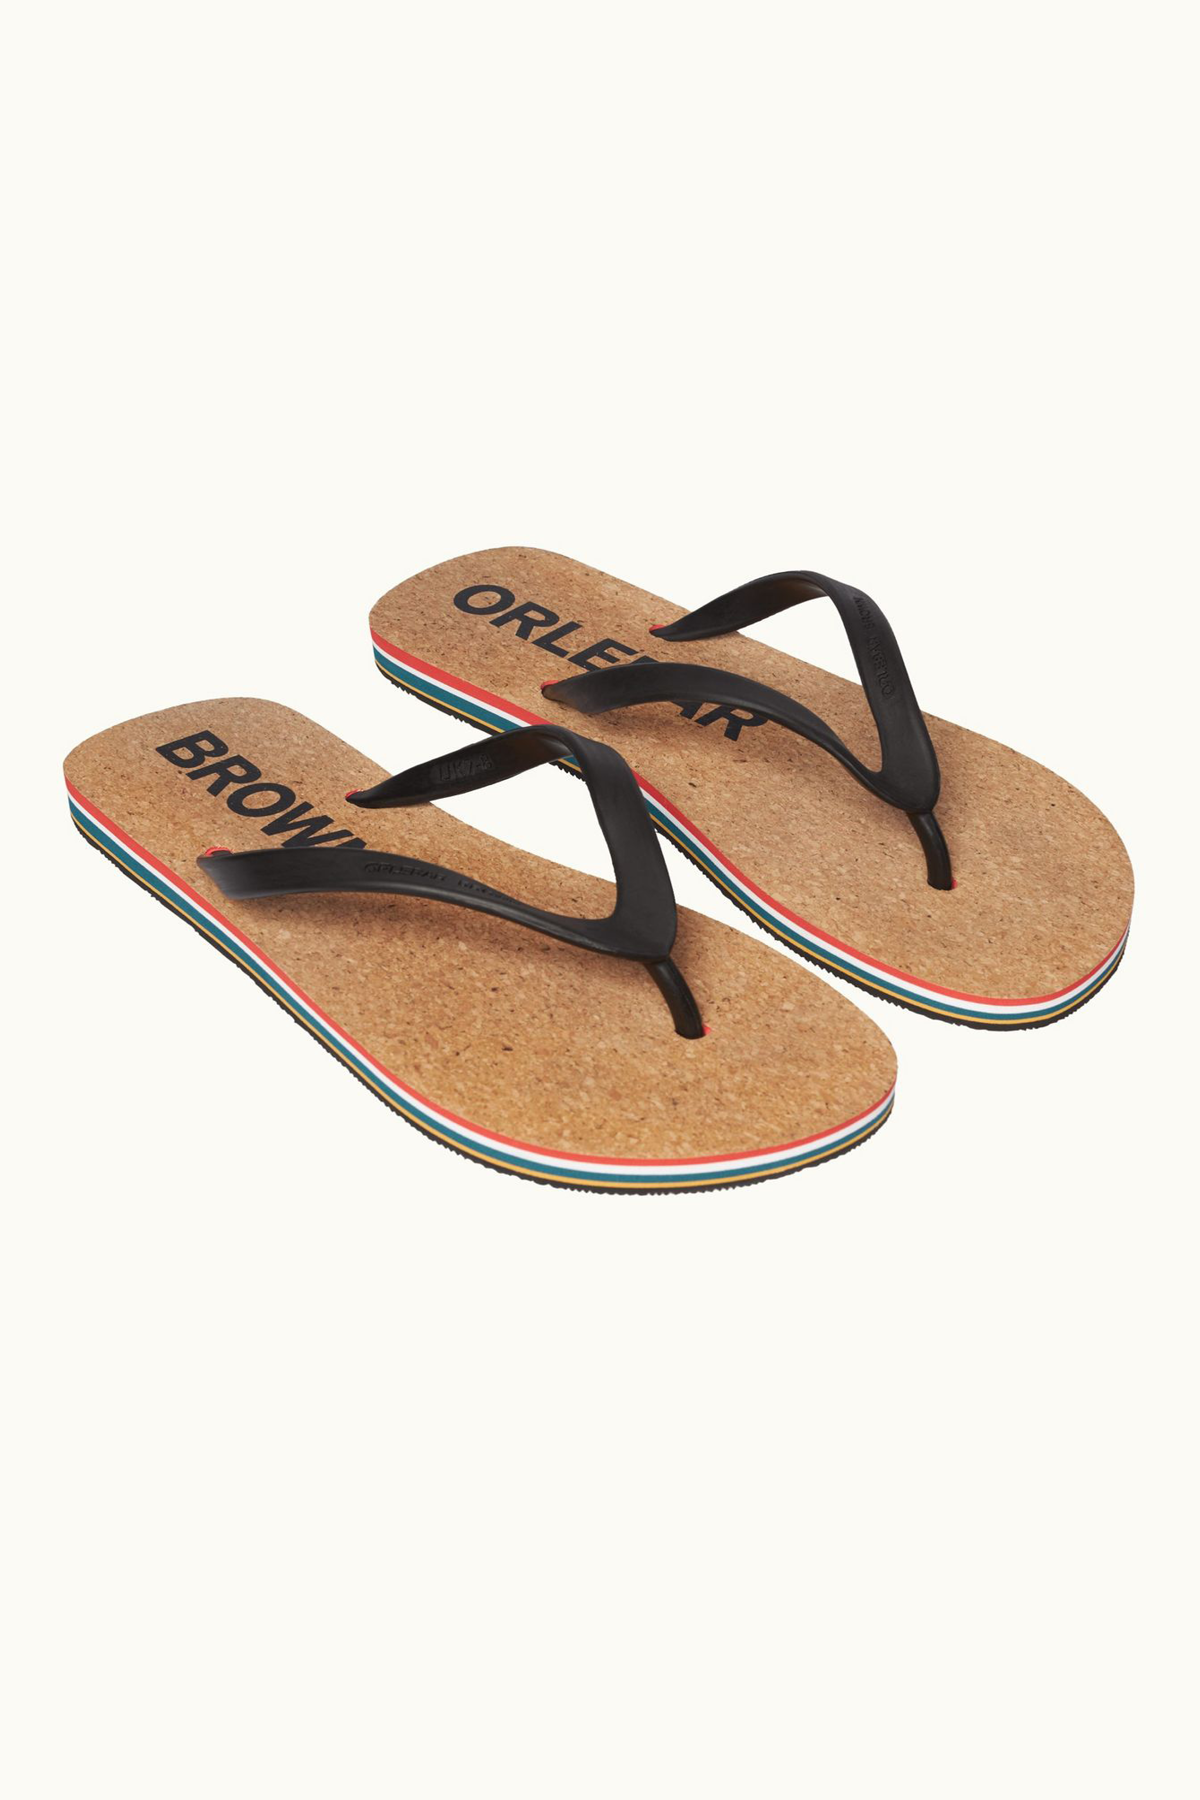 Orlebar Brown Haston Stripe Sandals - Black